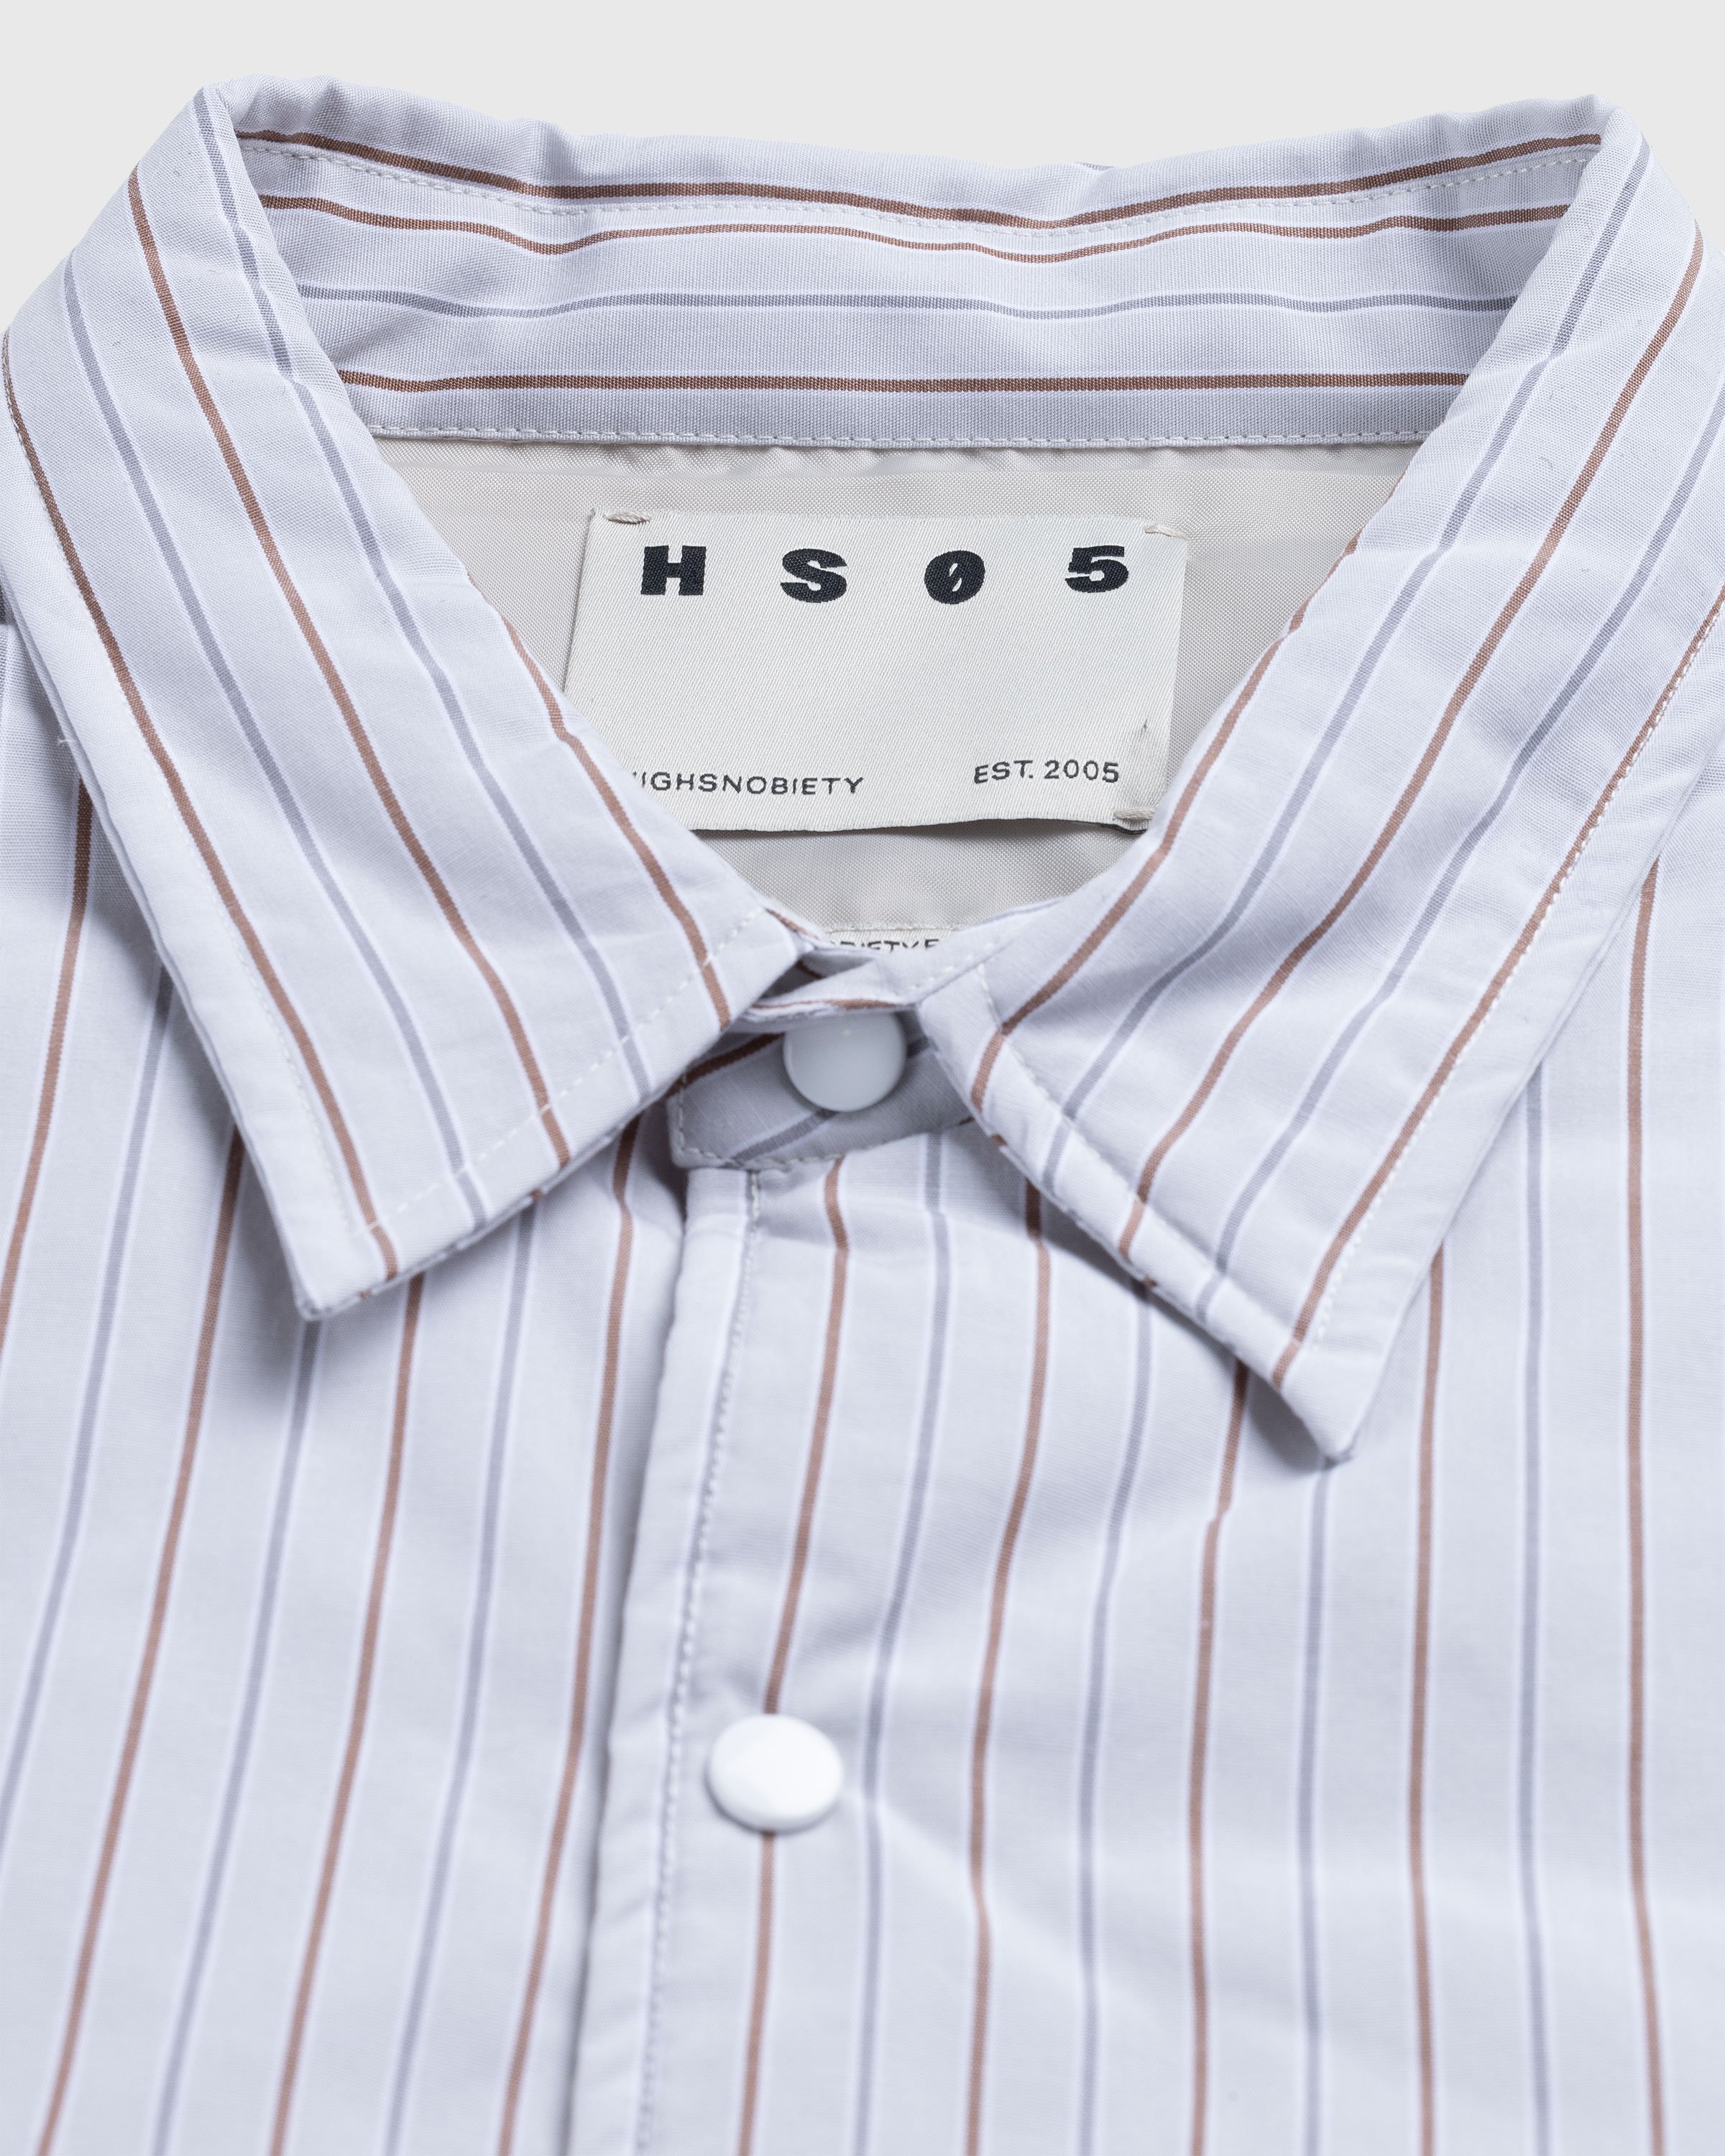 Highsnobiety HS05 - Insulated Shirt Jacket Stripes - Clothing - Beige - Image 6